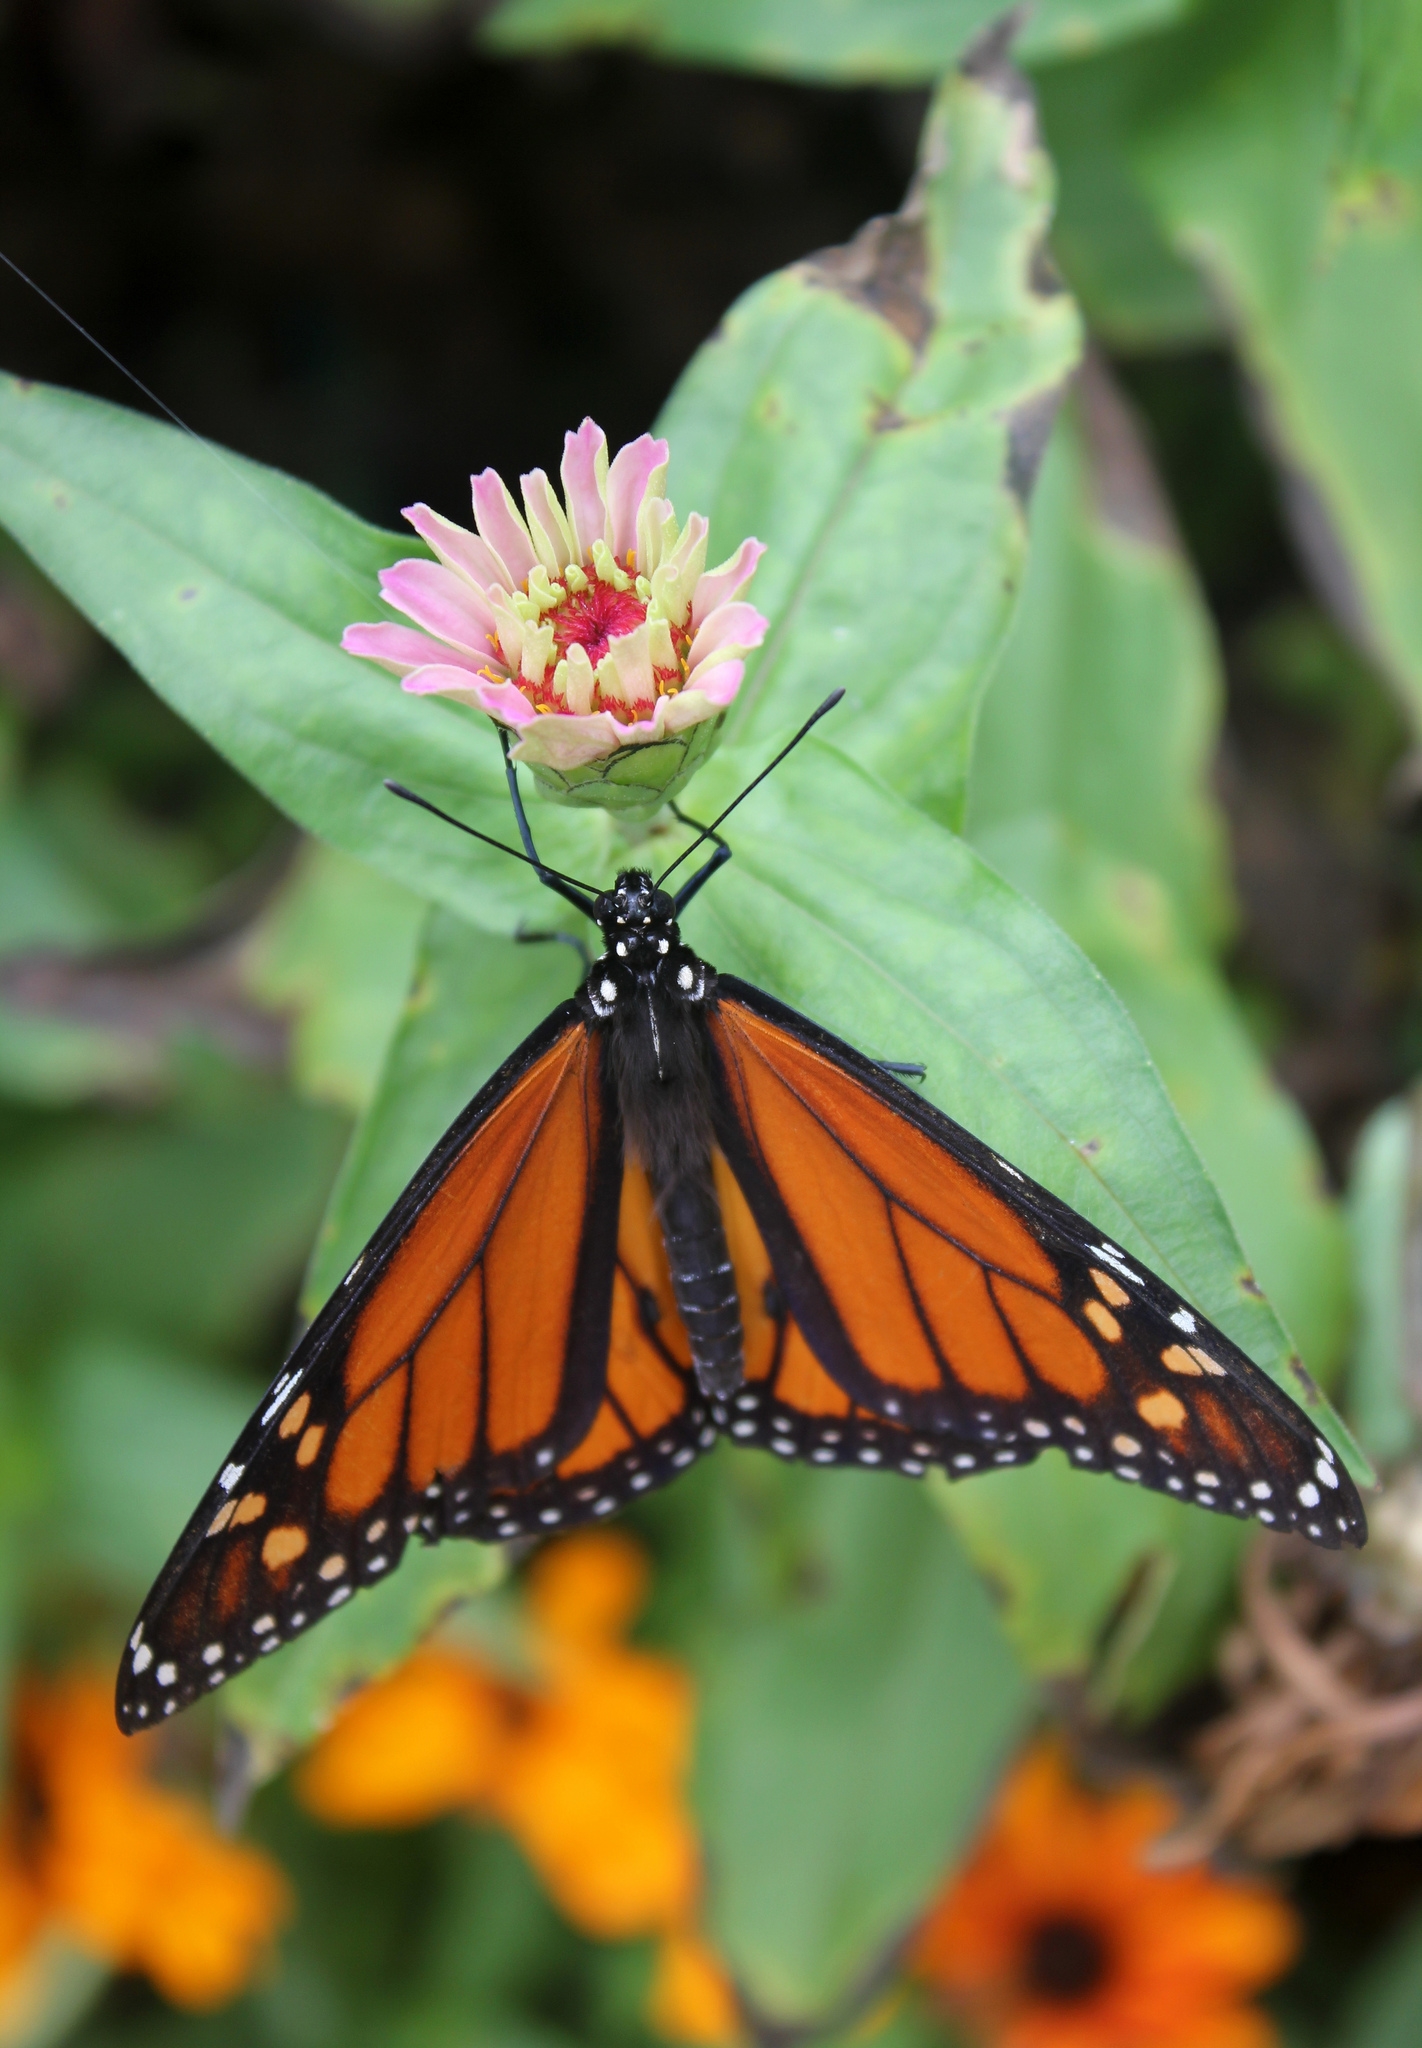 Festival of Butterflies | Powell Gardens, Kansas City's botanical garden